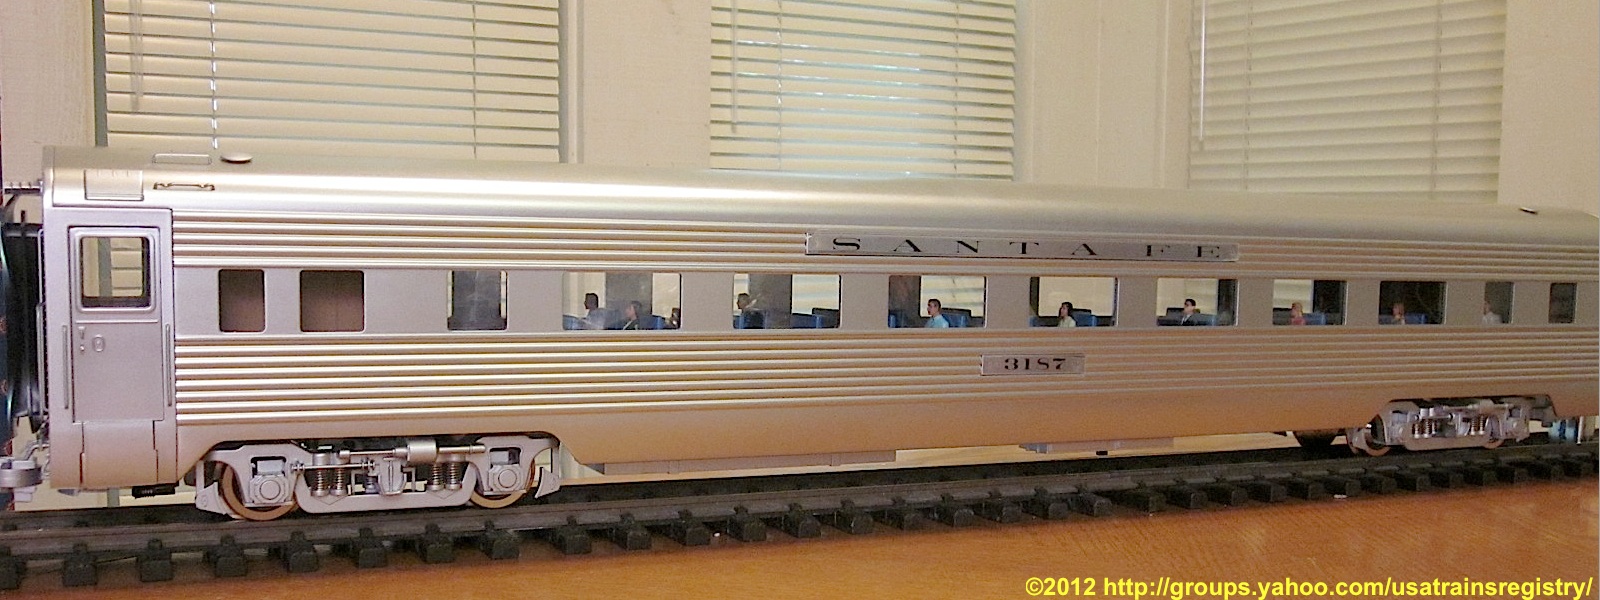 Santa Fe Super Chief -  Personenwagen (Passenger car) - 3187